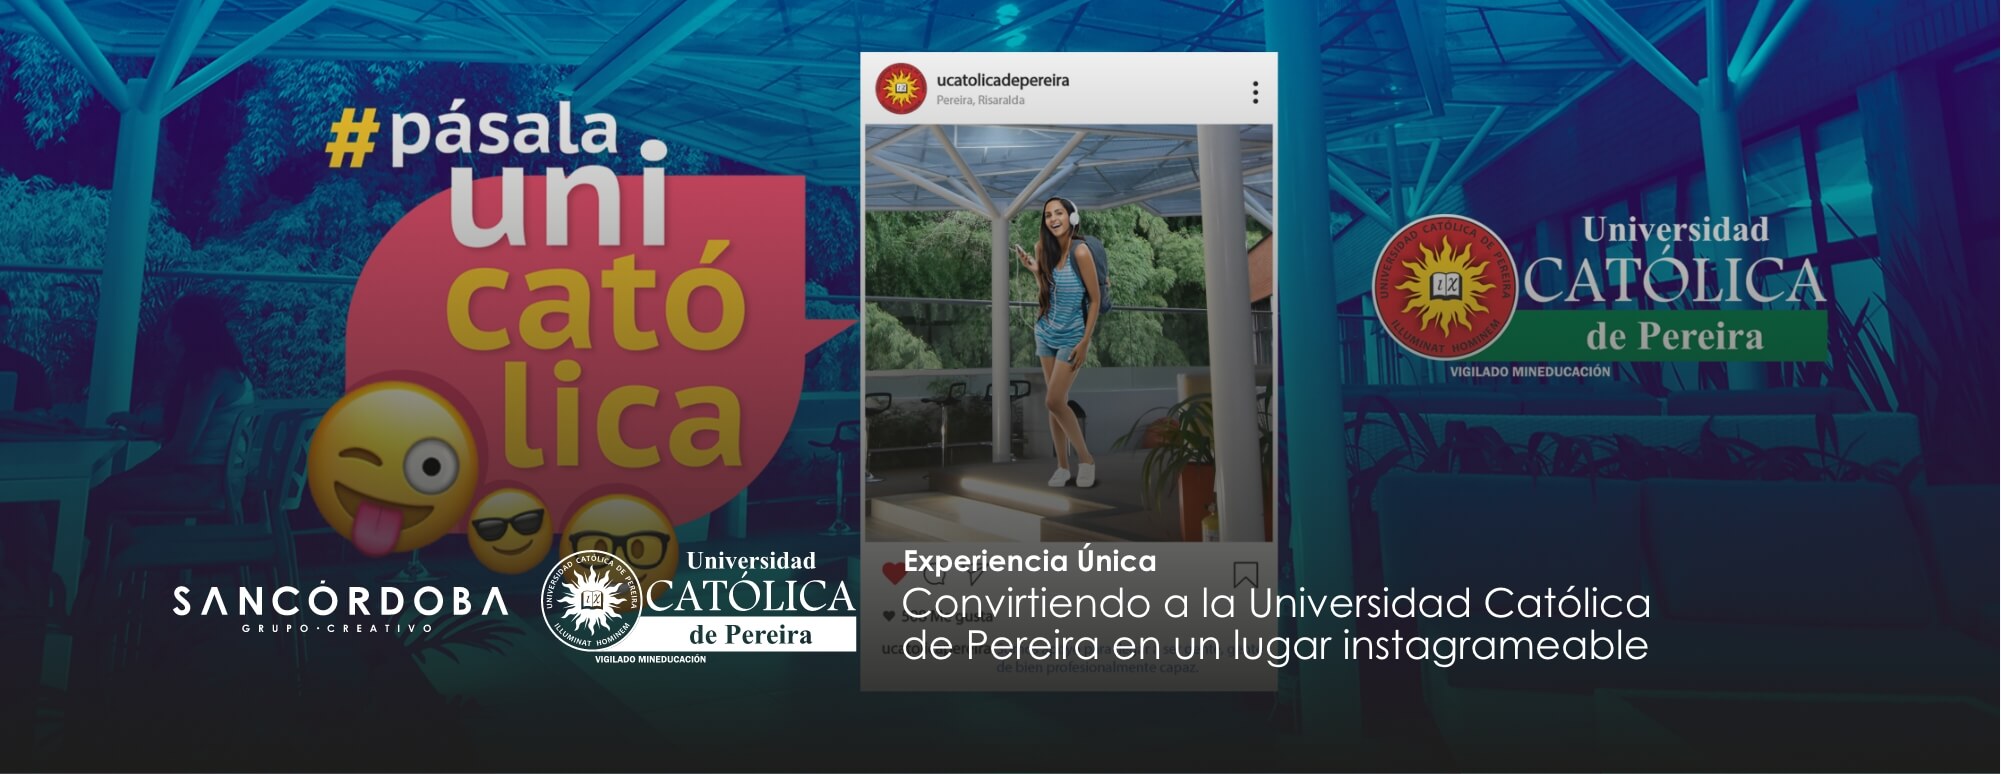 Sancordoba Convirtiendo a la Universidad Católica de Pereira en un lugar instagrameable Hero